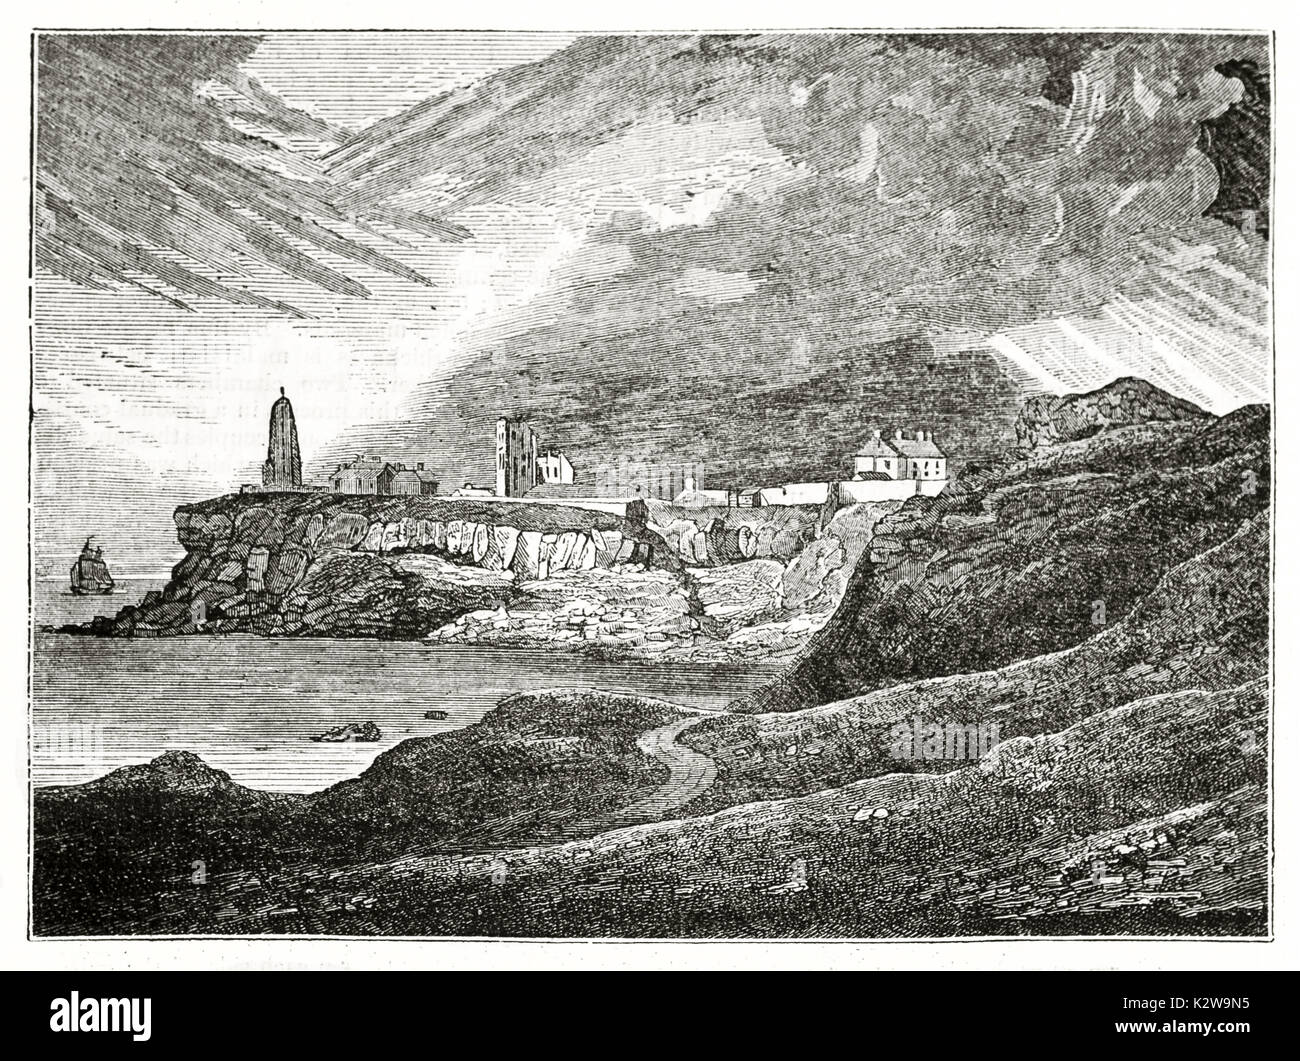 Alte Ansicht von Tynemouth Cliff, Leuchtturm, Priorat und Baracke, England. Von unbekannter Autor, auf Penny Magazine, London, 1835 veröffentlicht. Stockfoto